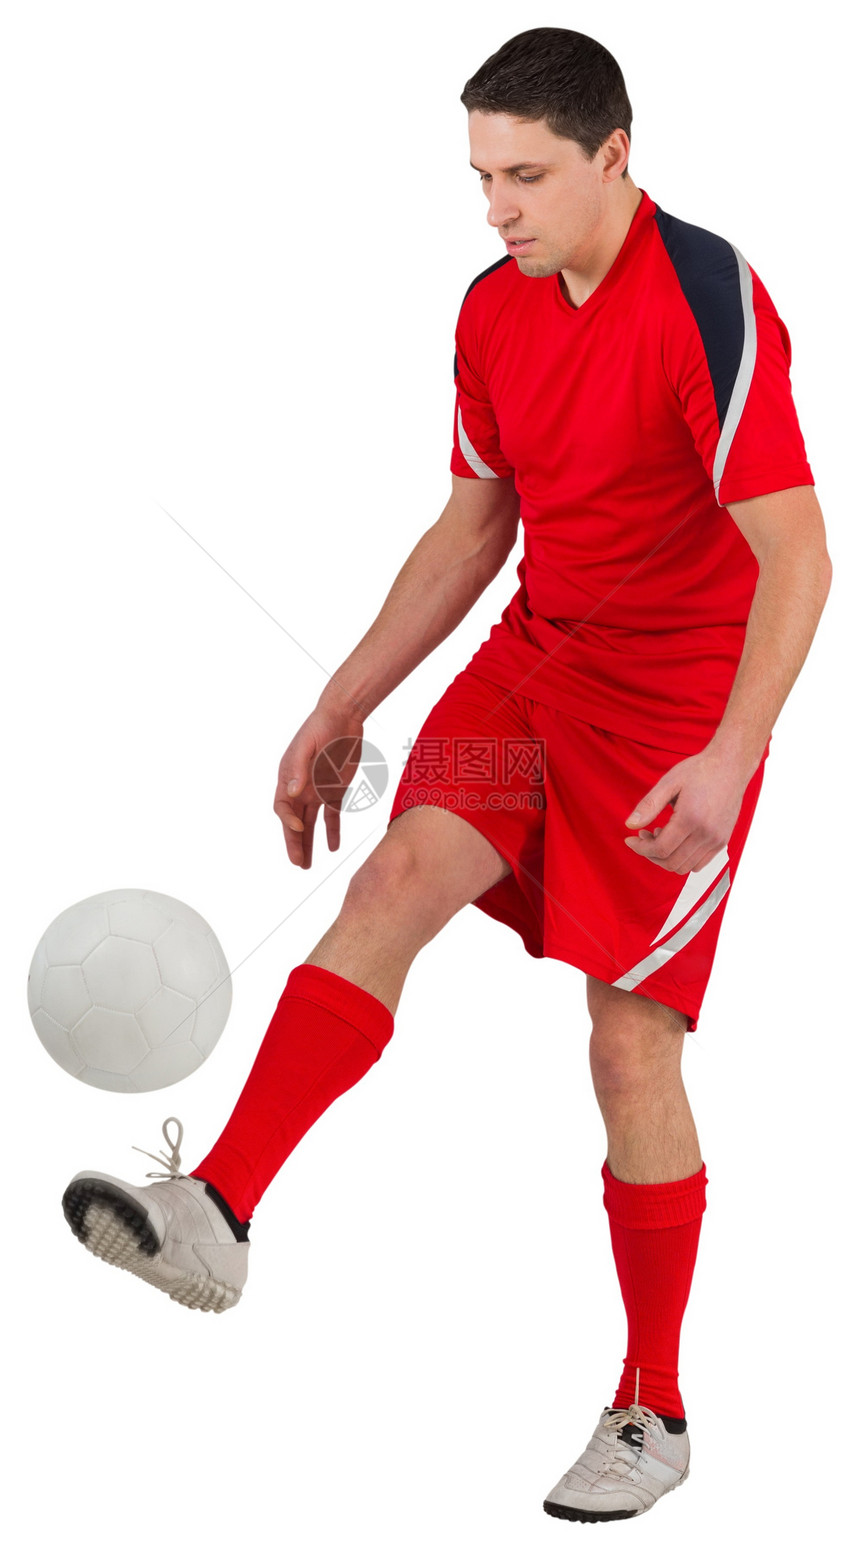 年轻足球运动员踢球男人齿轮男性运动服红色播放器活动运动图片